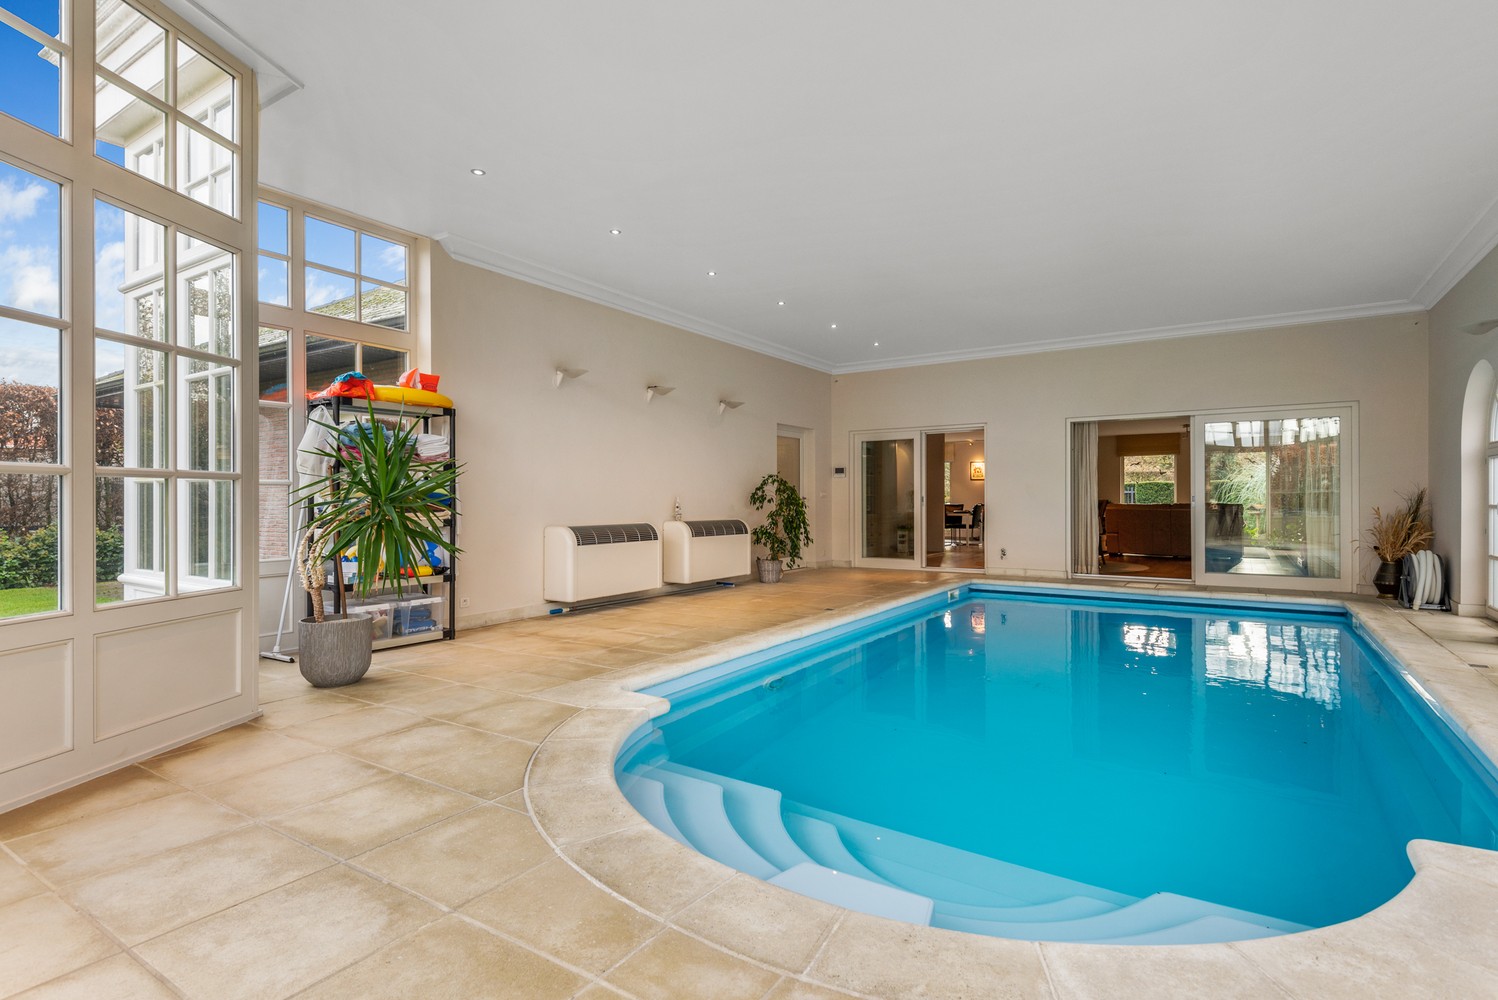 Prachtige villa met binnenzwembad op een perceel van ± 910m² in Wijnegem! afbeelding 16